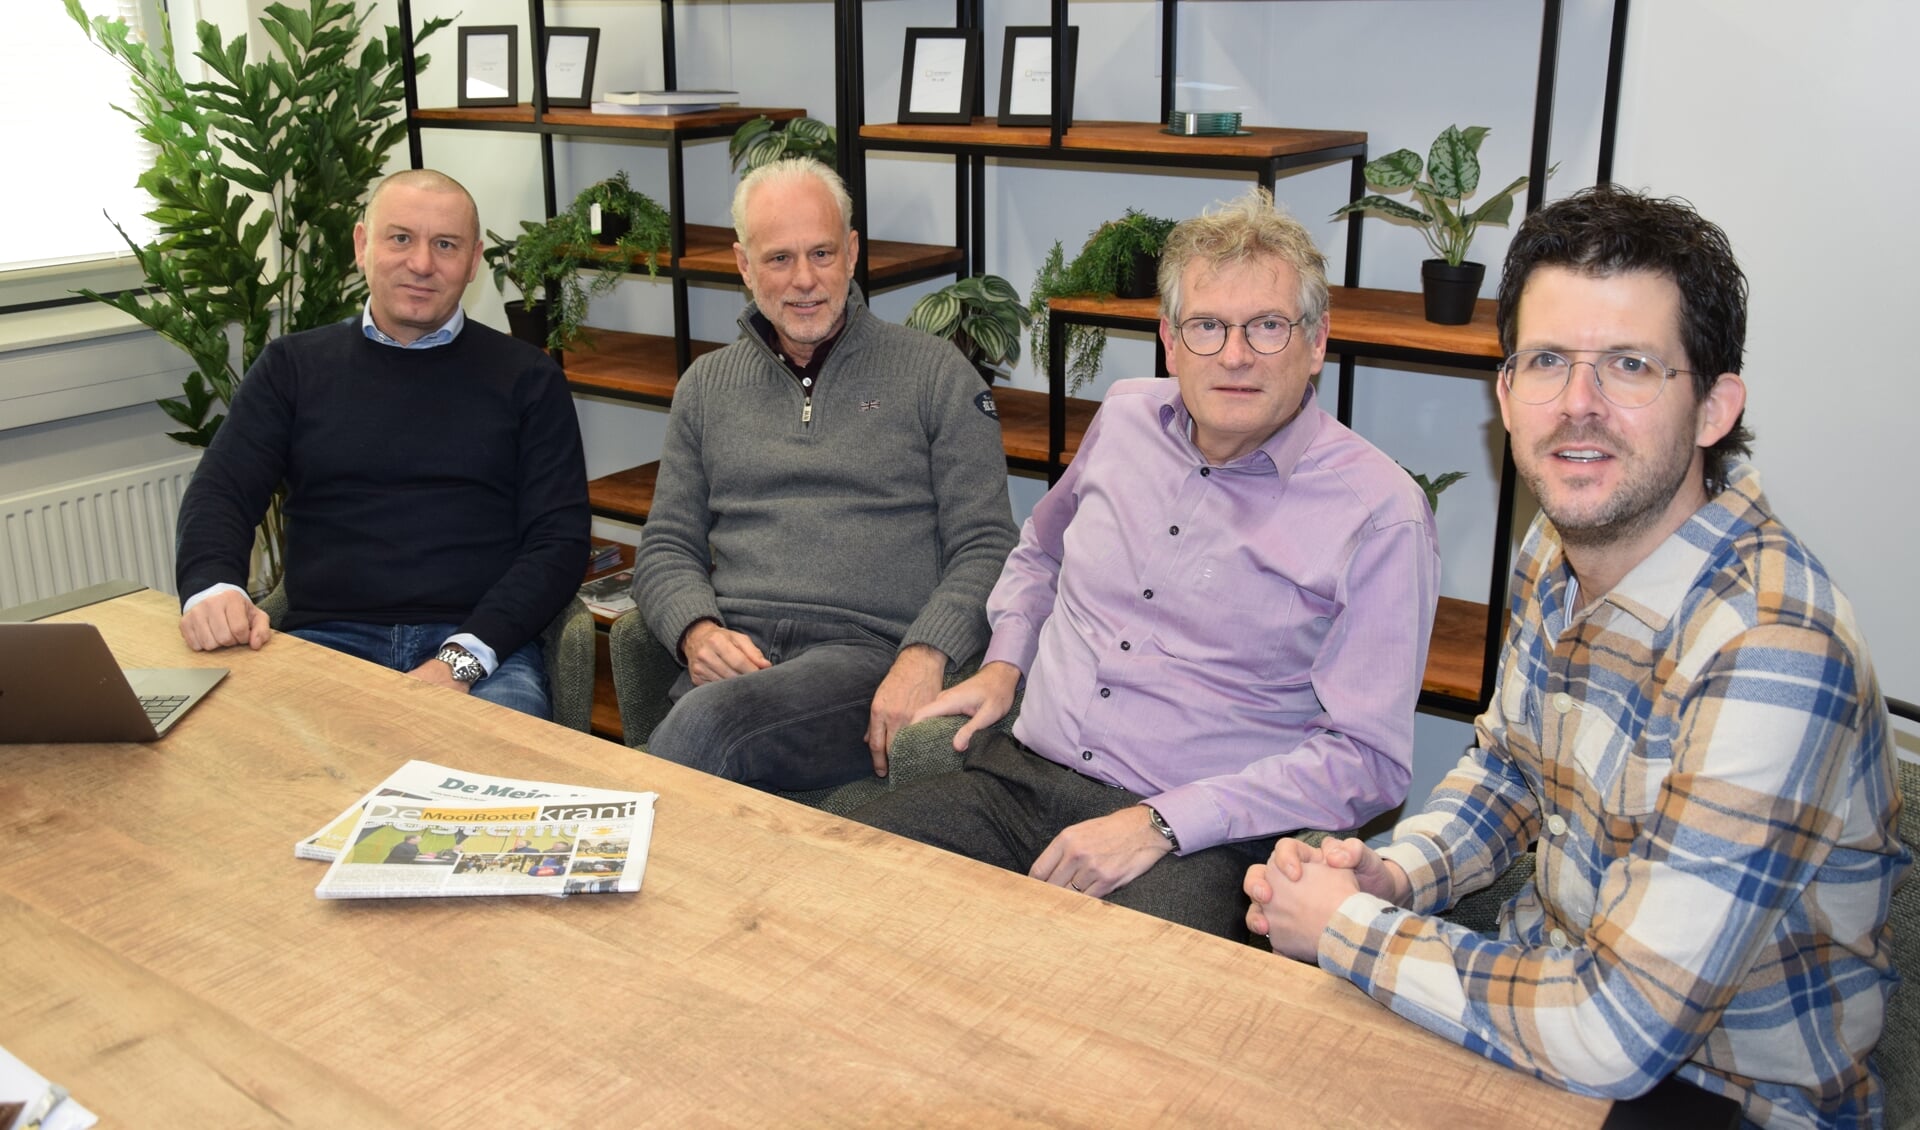 v.l.n.r.: Erhard Soeterbroek, Henk van der Zee, Louis van Besouw en Jeroen van de Sande